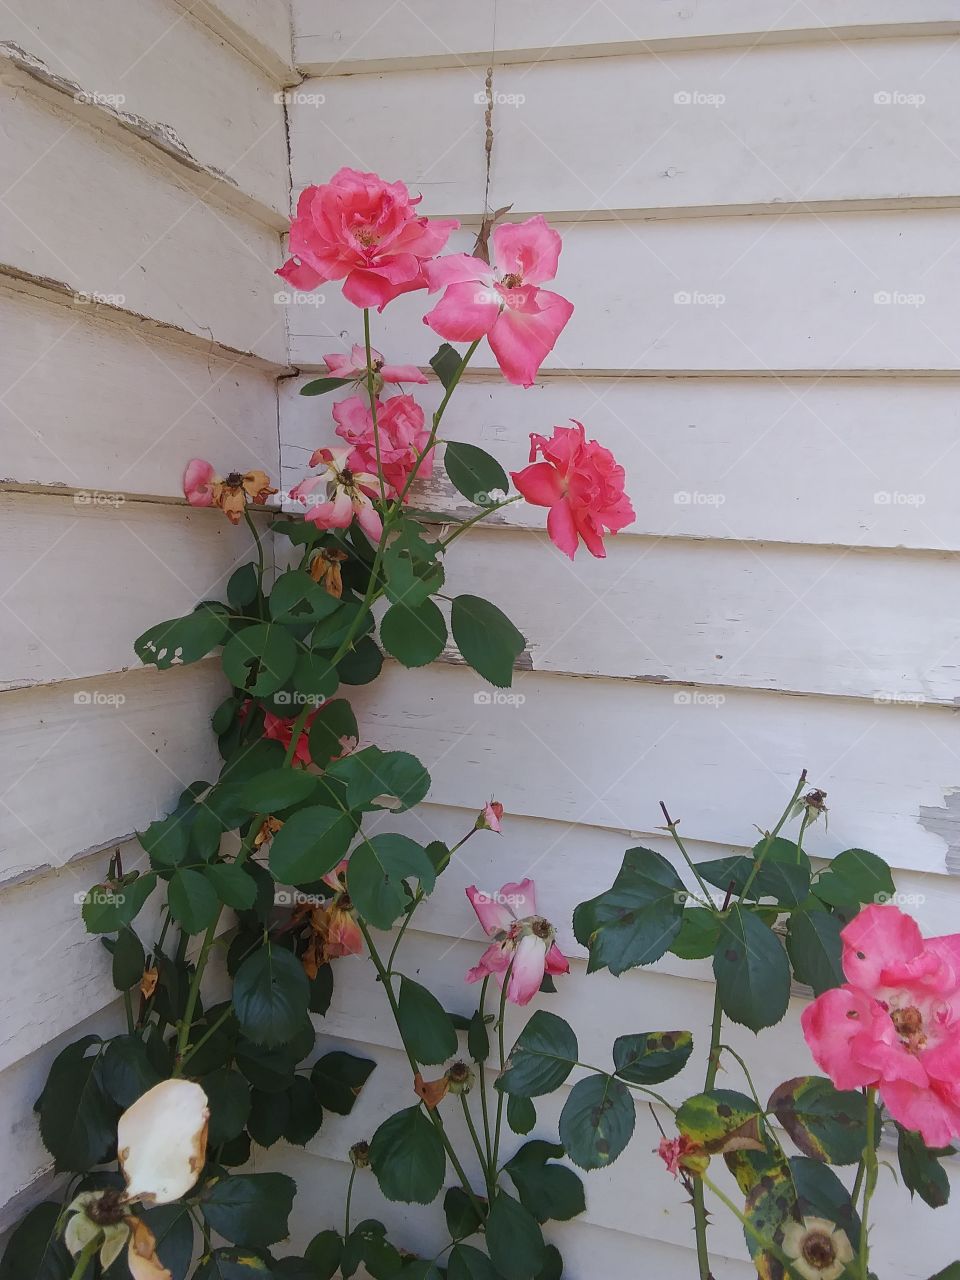 rose in a corner